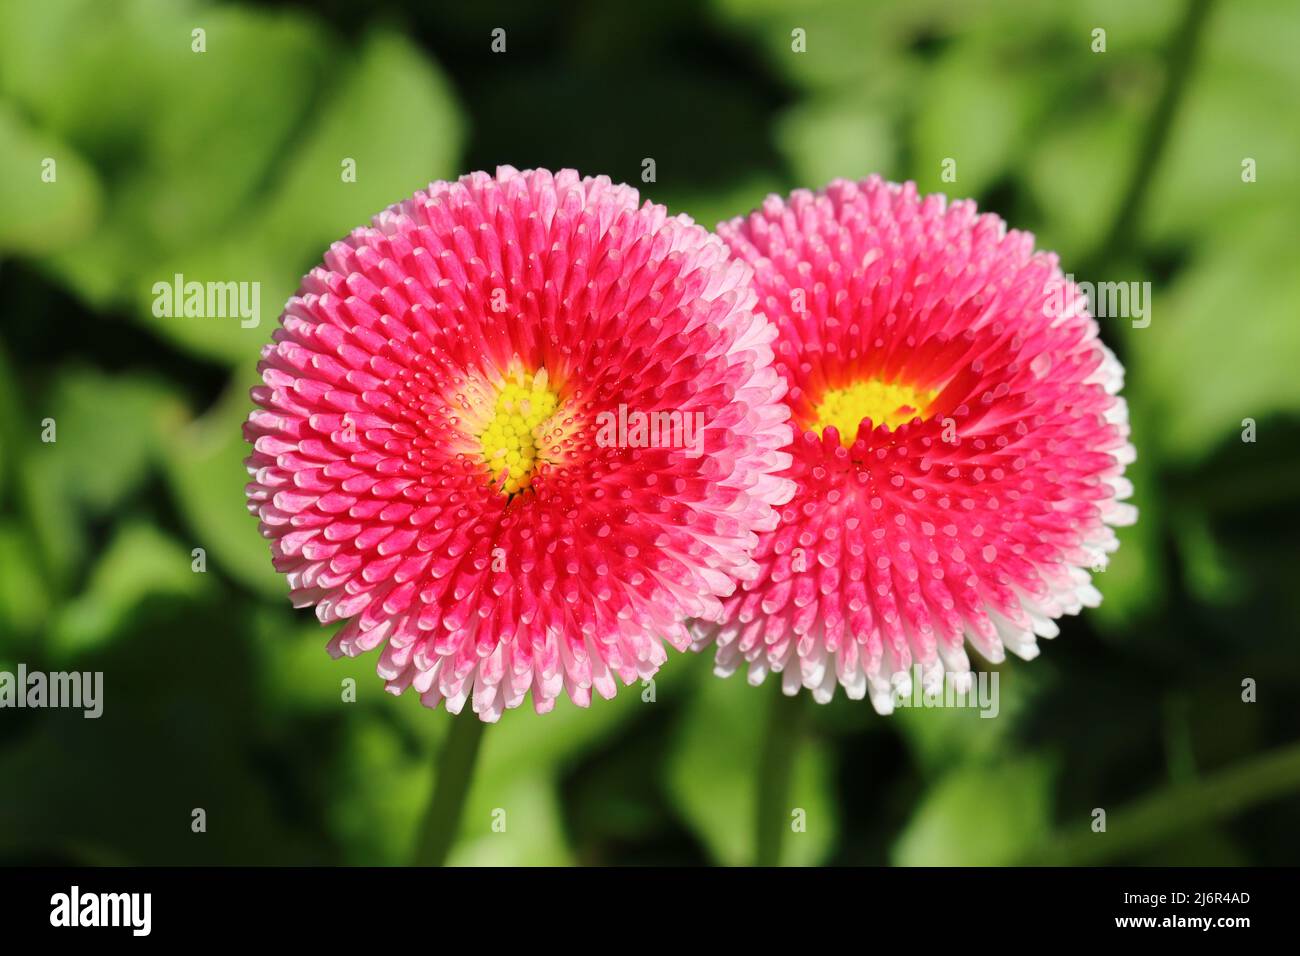 Nahaufnahme von zwei schönen bellis perennis Blumen vor einem verschwommenen grünen Hintergrund Stockfoto